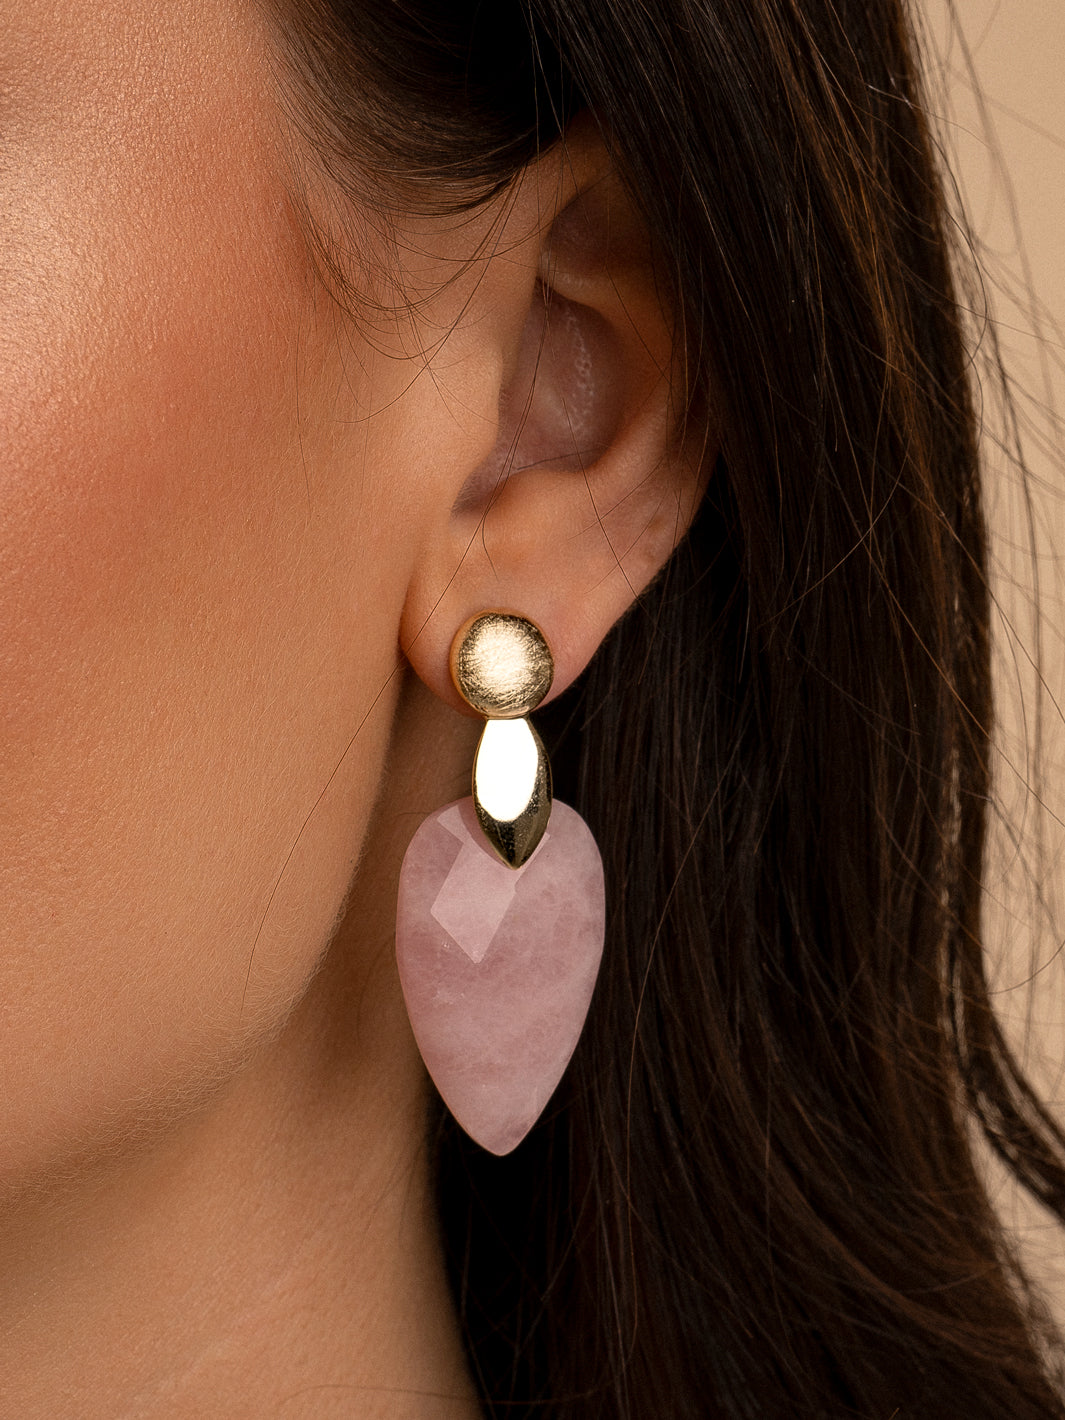 Rose Quartz - Blossom earring precious stones